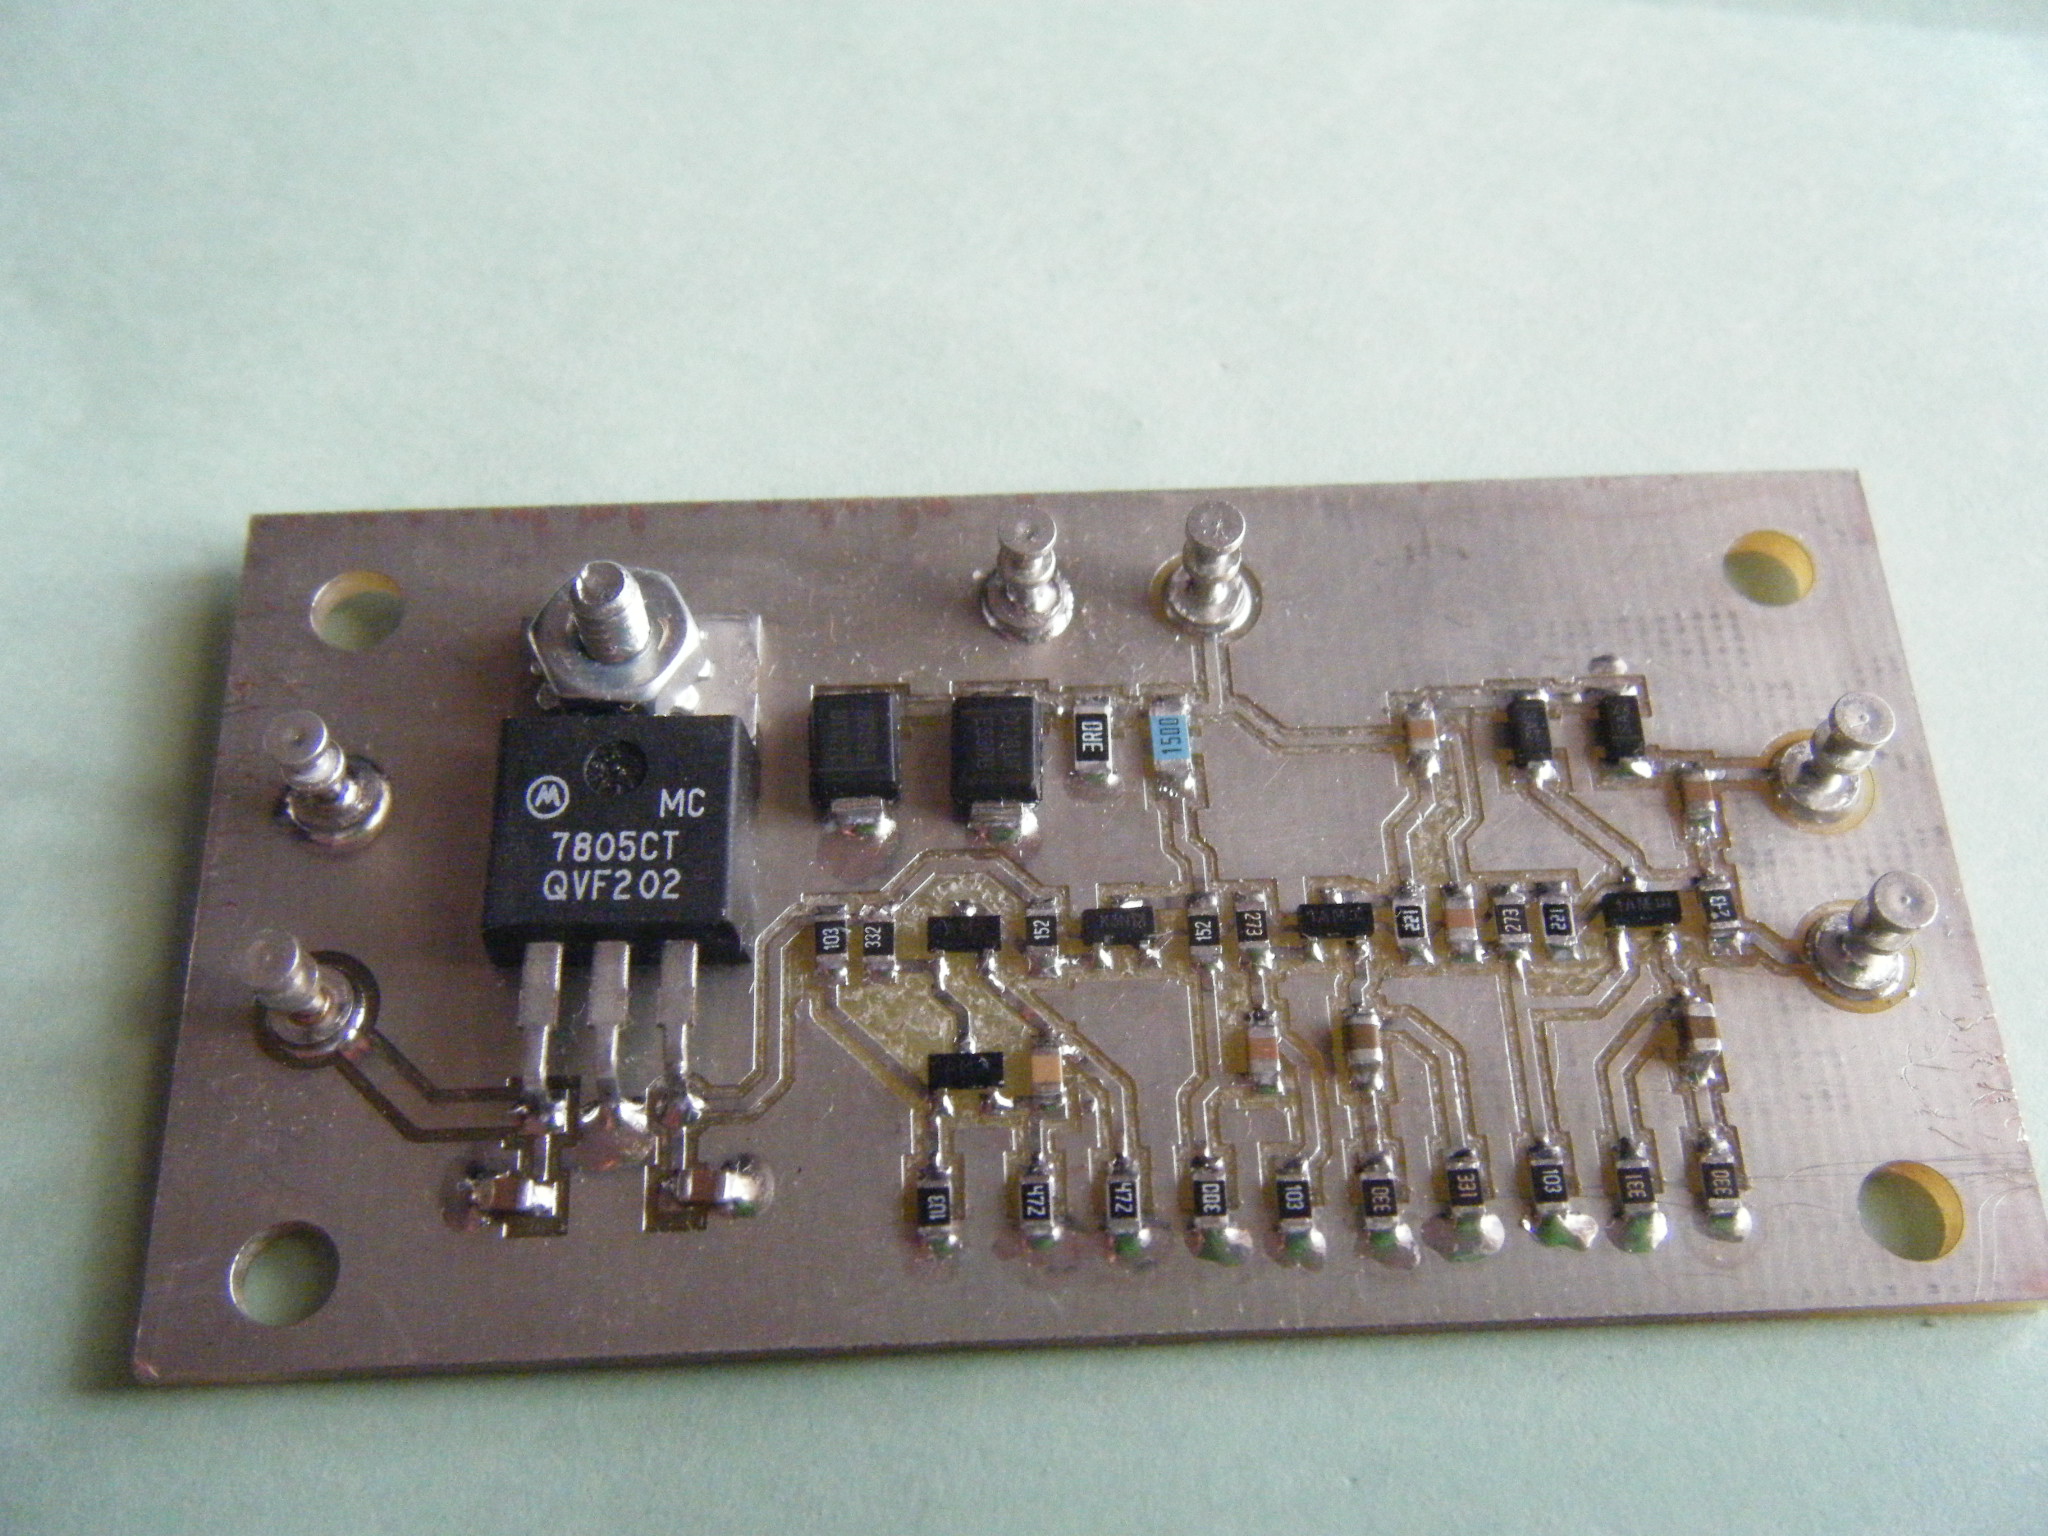 5 Transistor ESR Meter Design